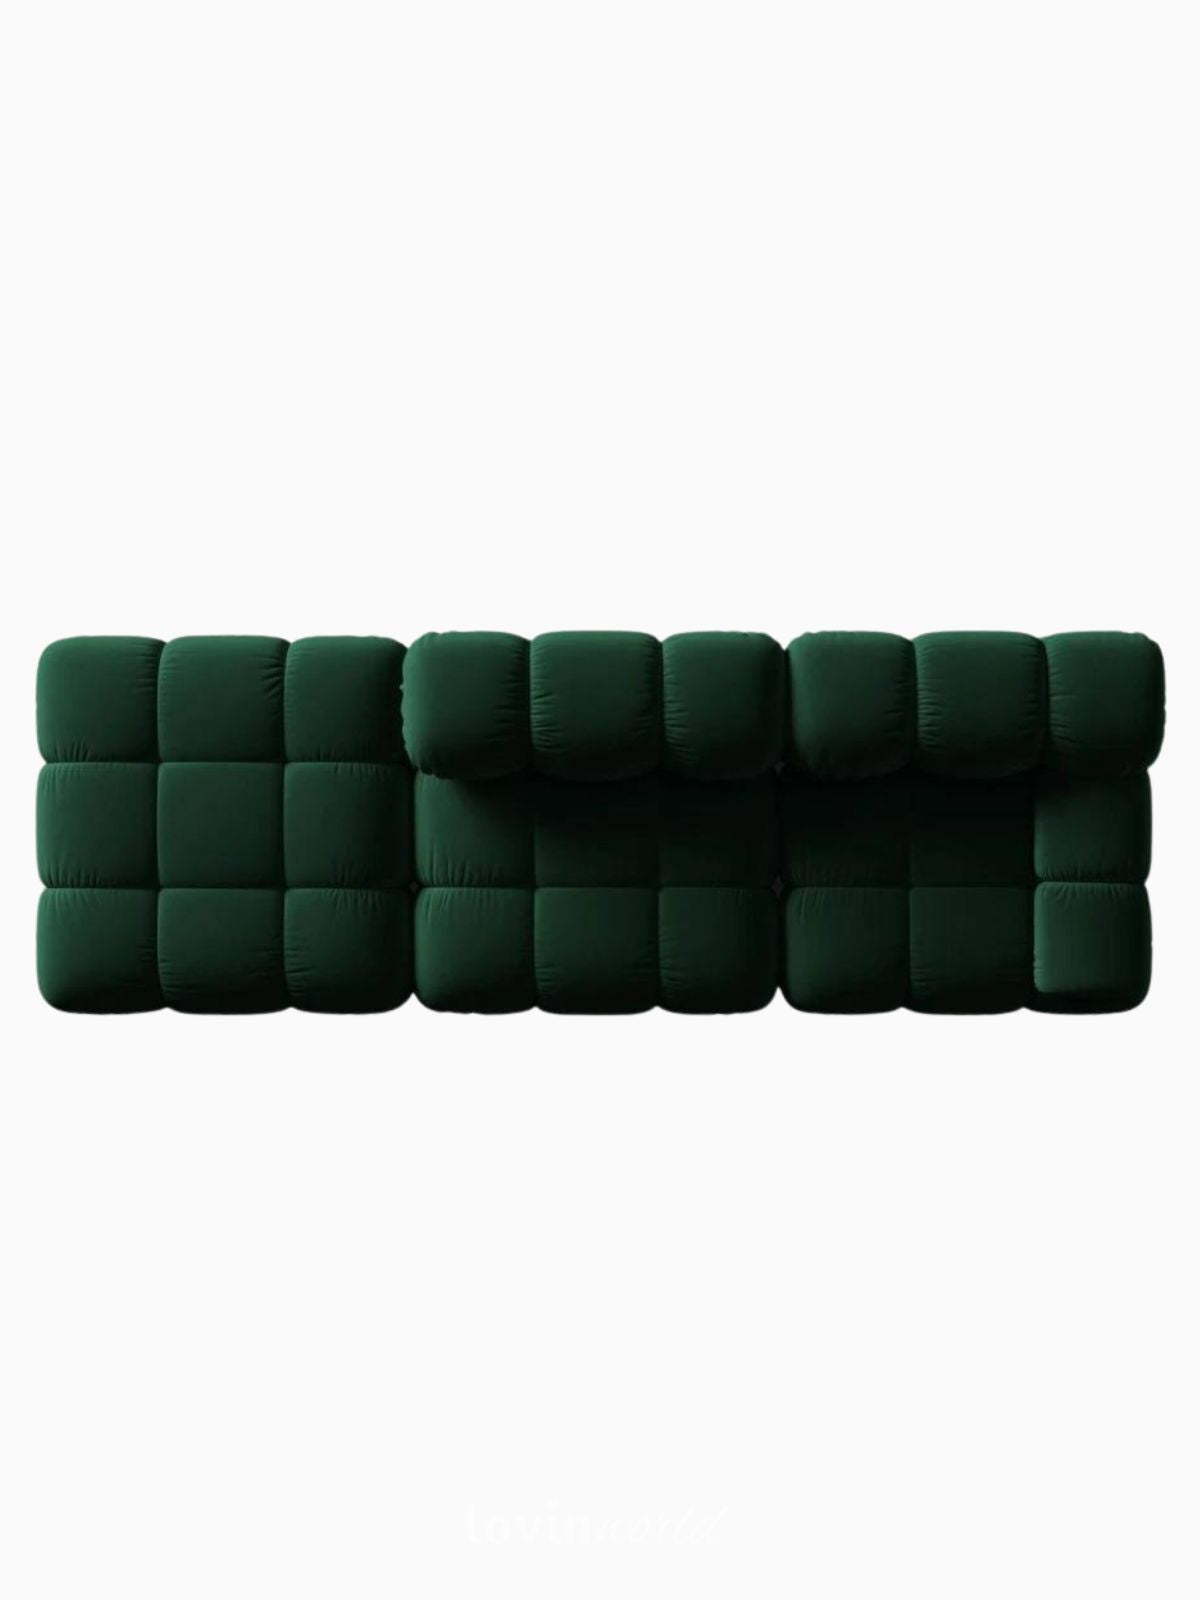 Divano modulare 4 sedute Bellis in velluto, colore verde-4